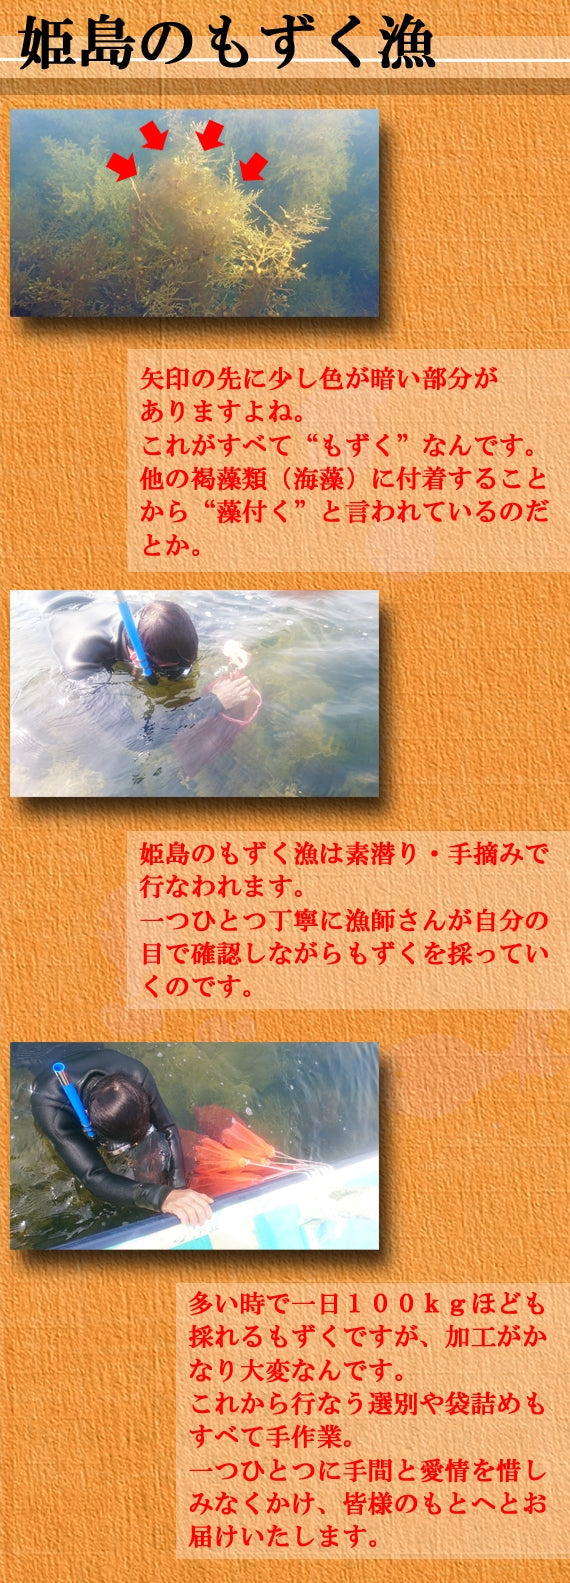 【送料無料】姫島産 "天然" 絹もずく 60g×5個セット